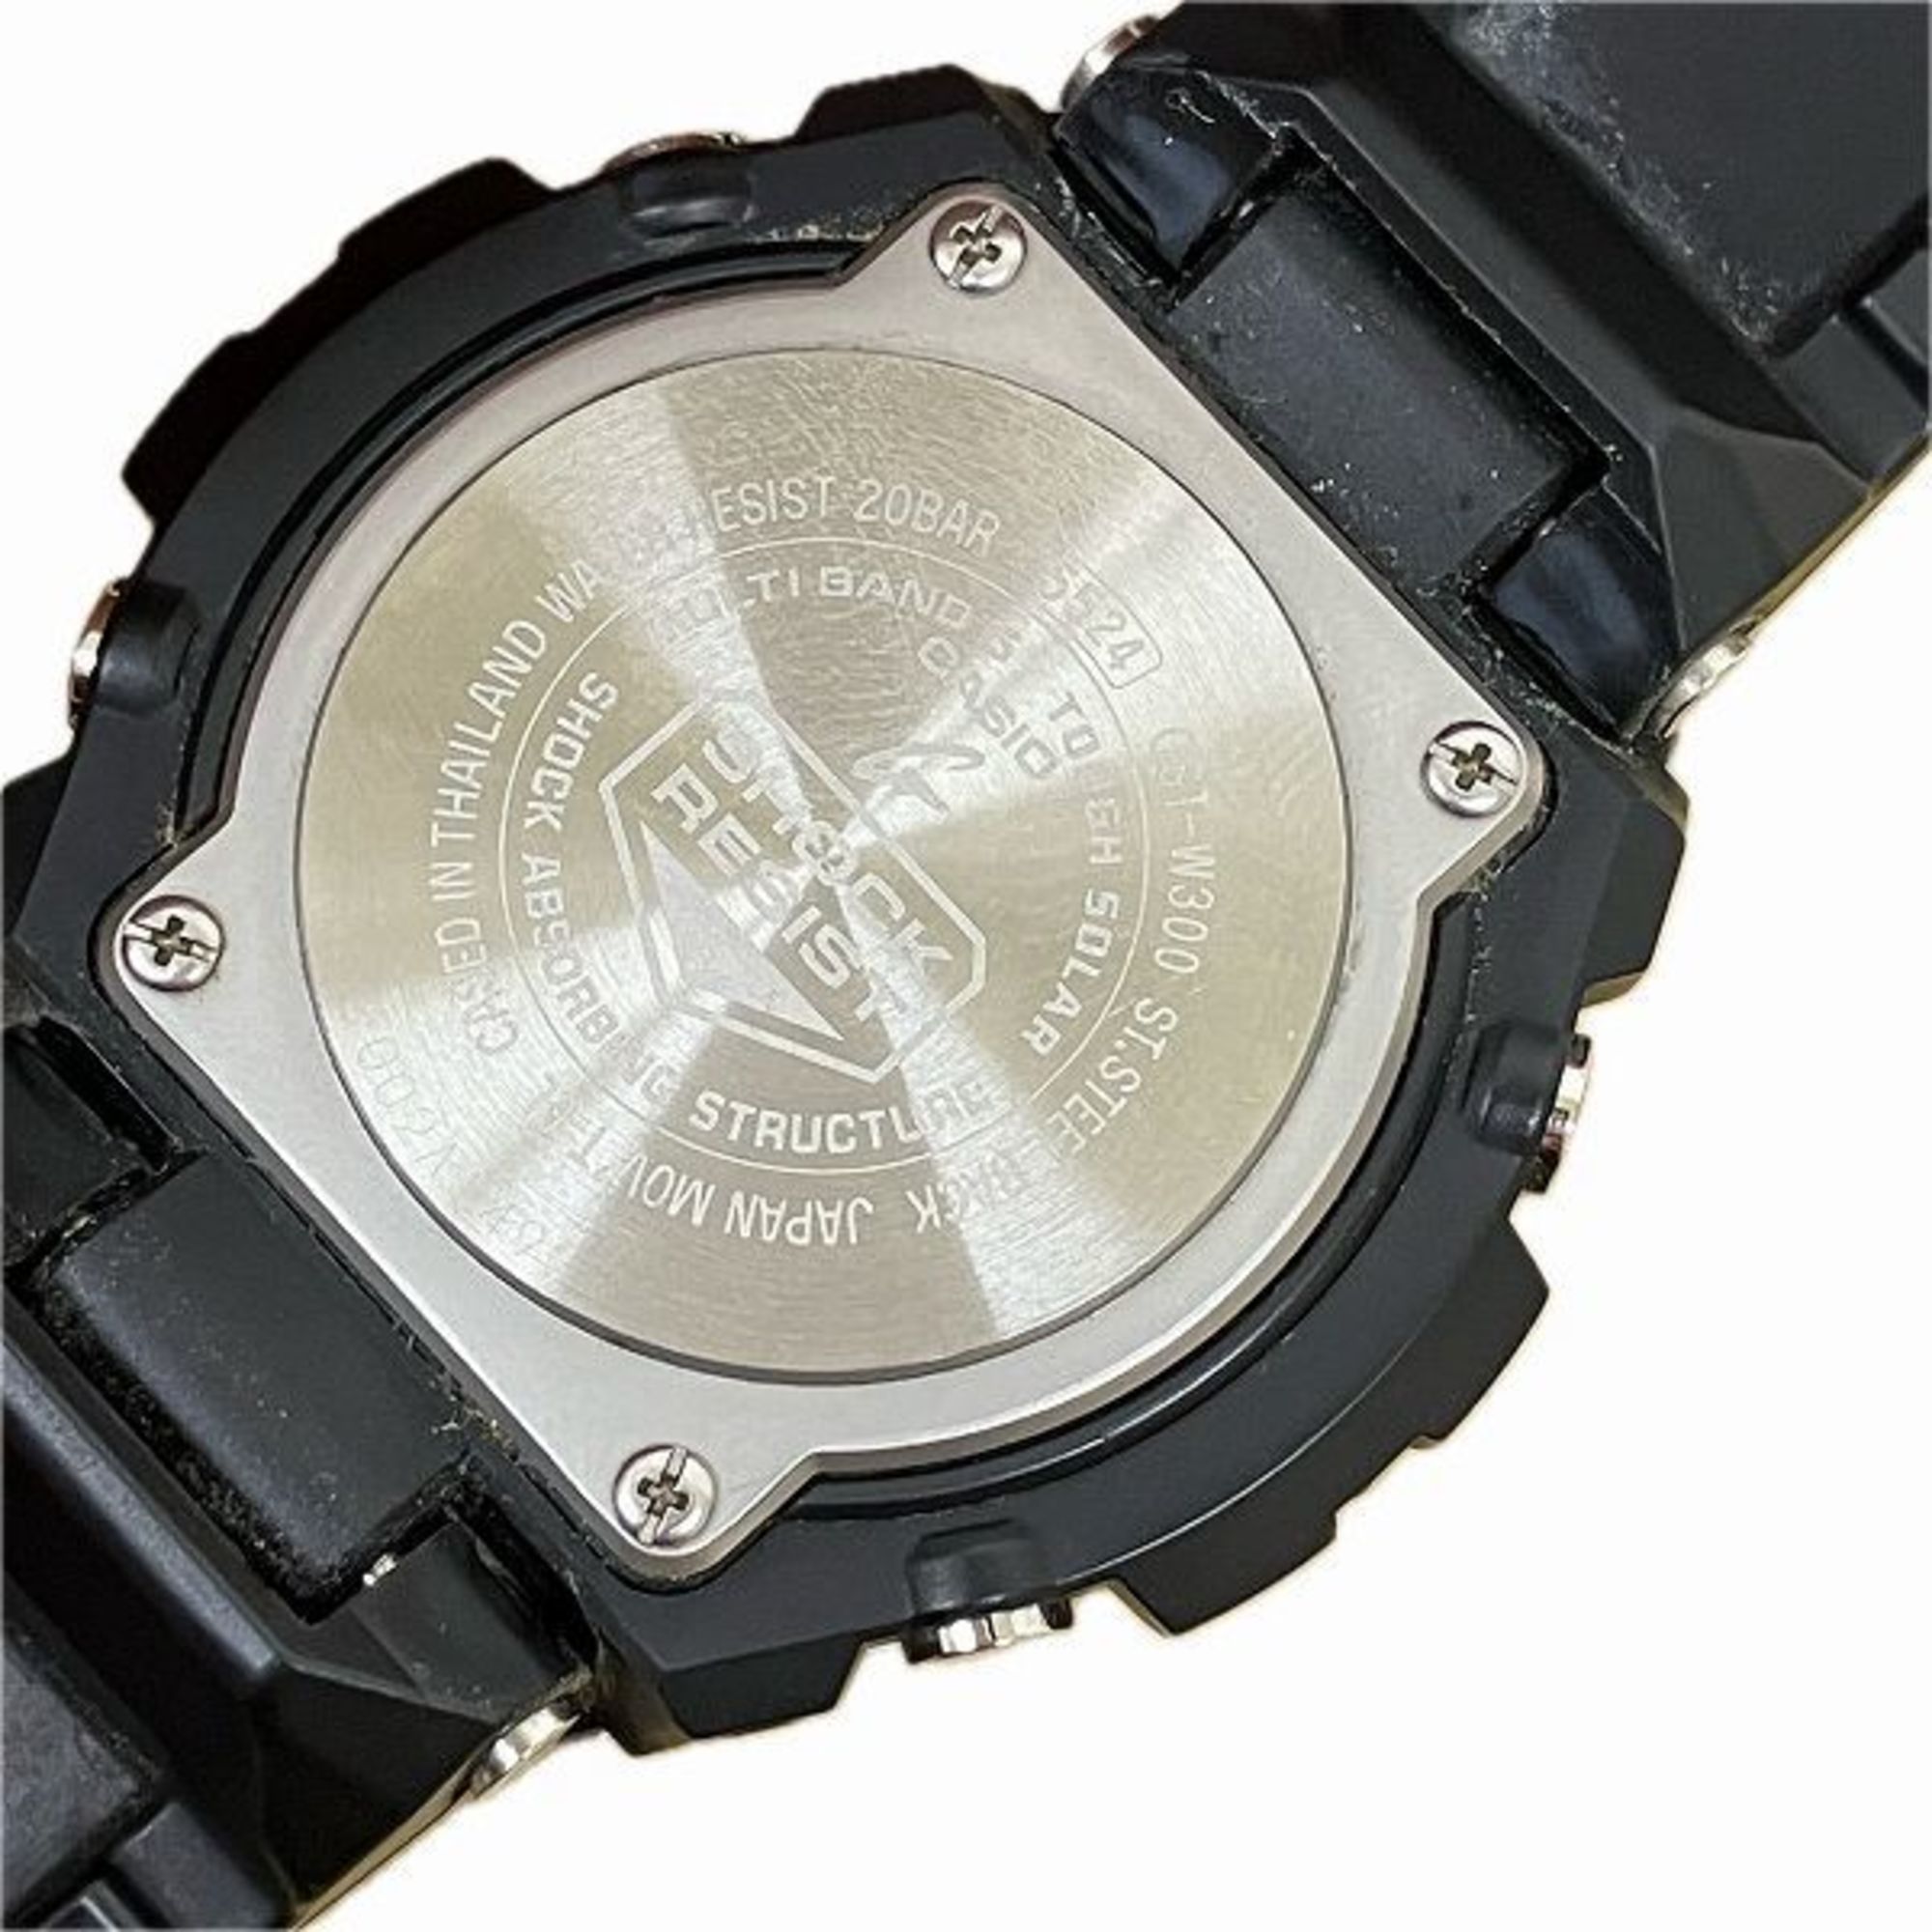 Casio G-SHOCK GST-300 Radio Solar Watch Men's